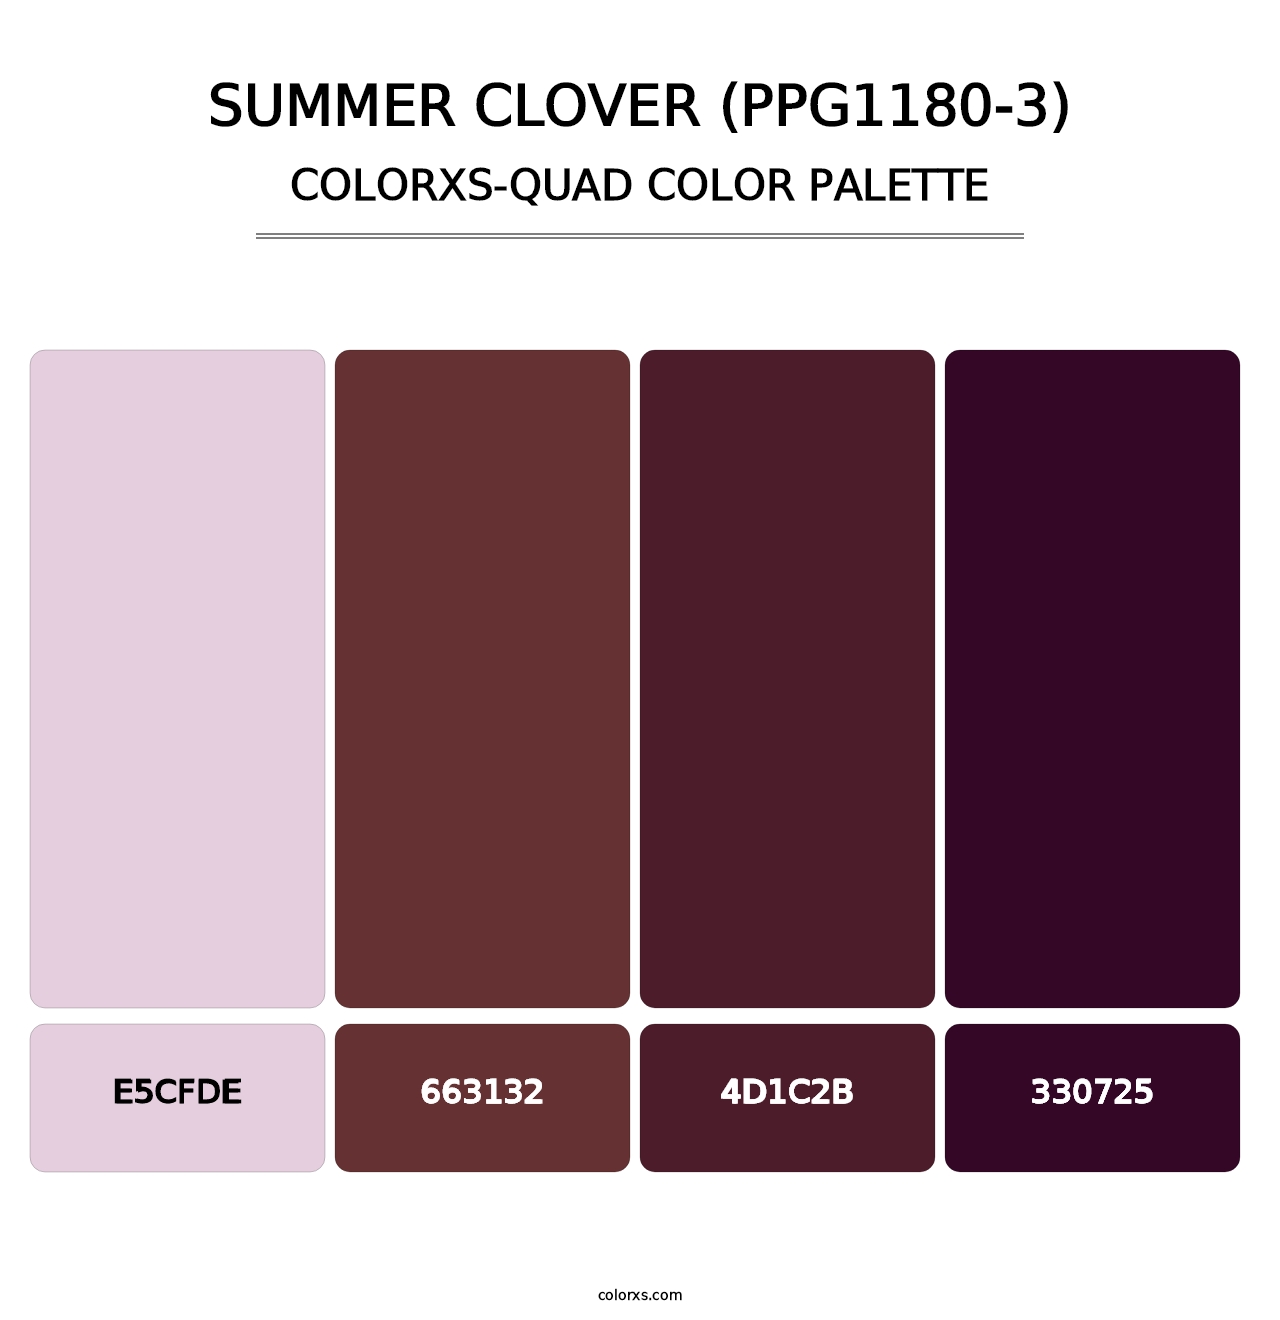 Summer Clover (PPG1180-3) - Colorxs Quad Palette